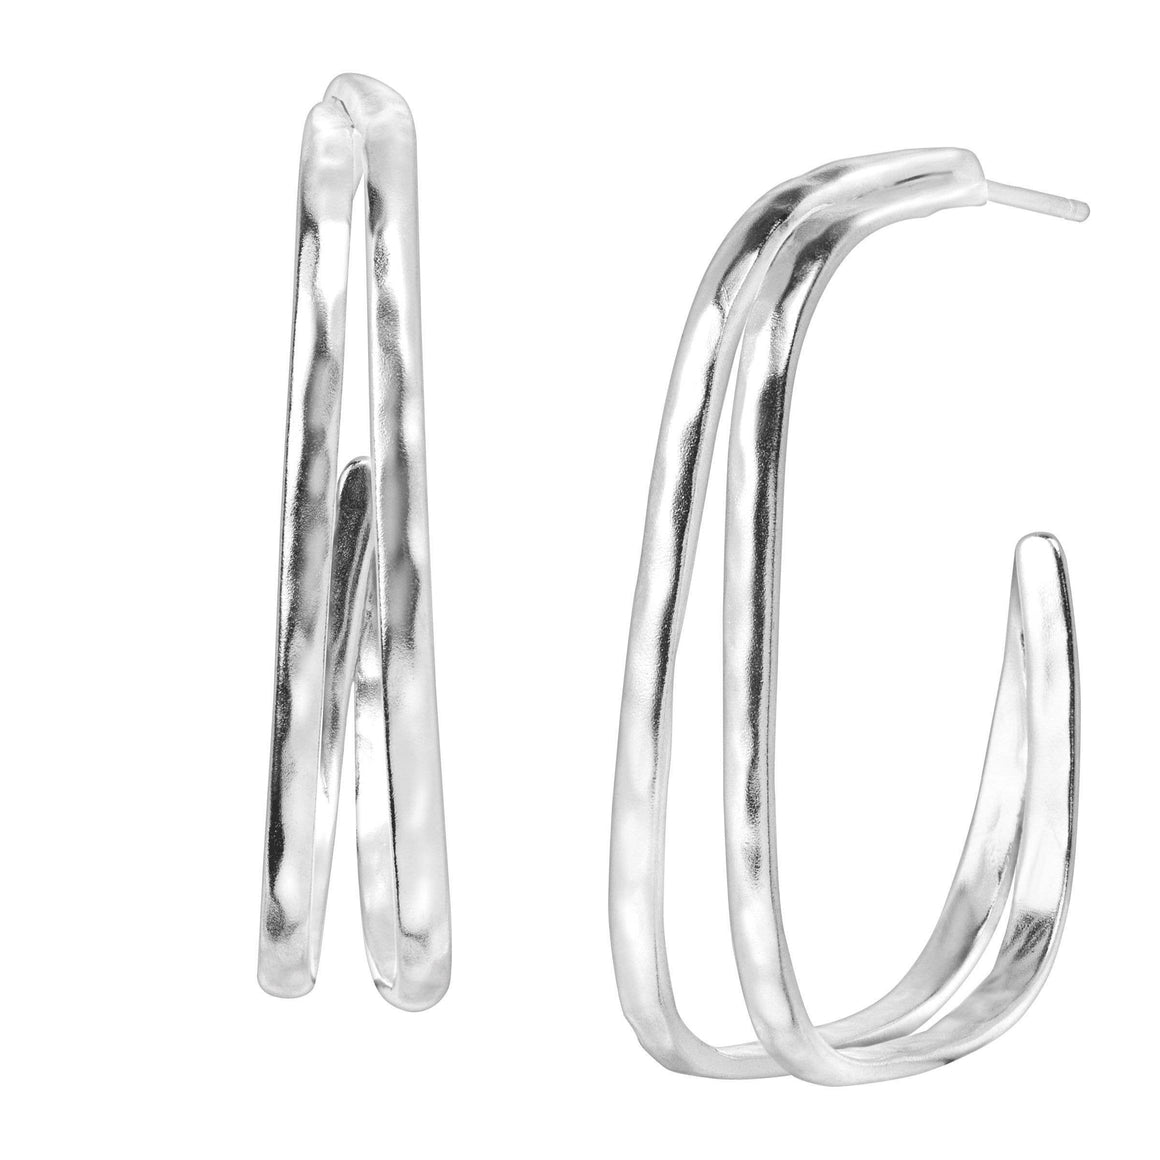 Silpada 'Natural Order' Geometric Hoop Earrings in